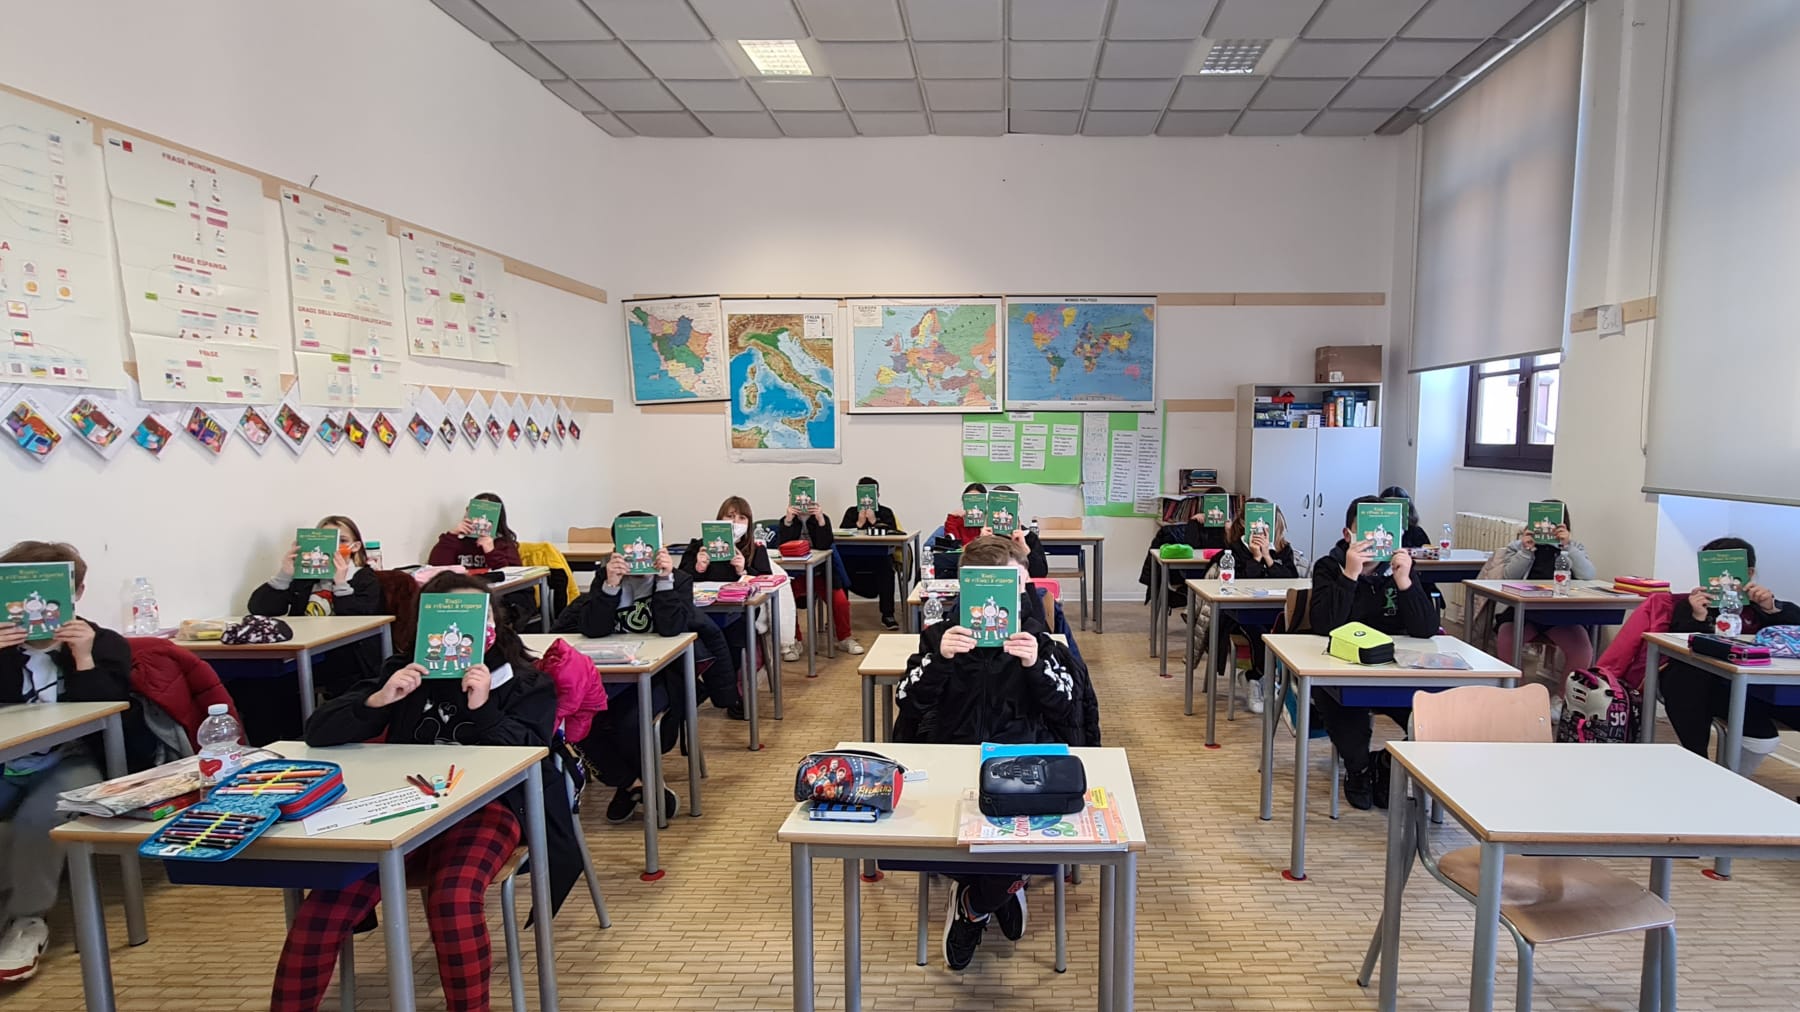 Le buone pratiche, a casa e a scuola: gli studenti aretini fanno educazione ambientale con Sei Toscana e Rotary